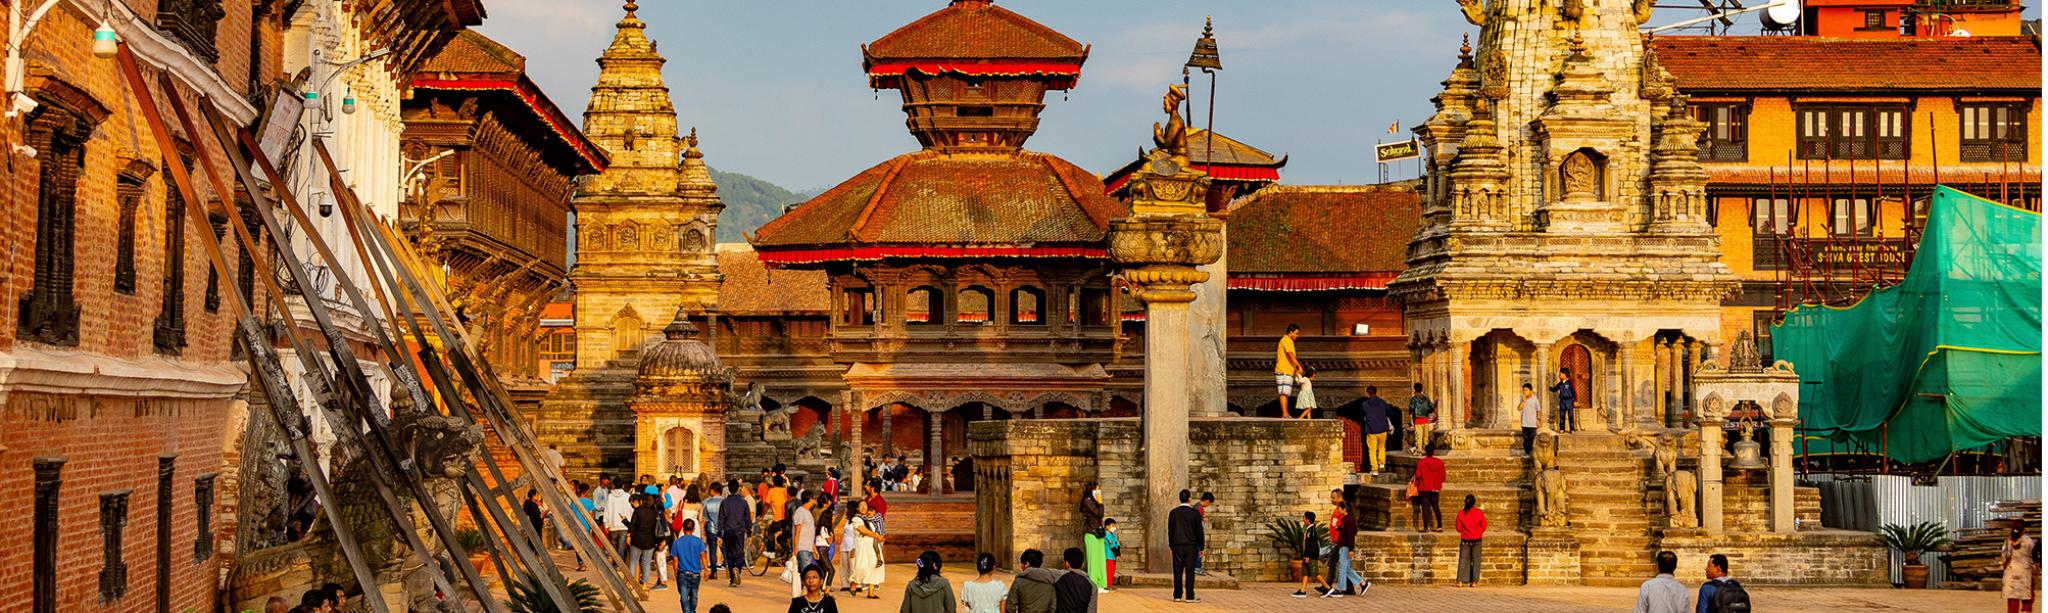 Bhaktapur, Bagmati, Nepal